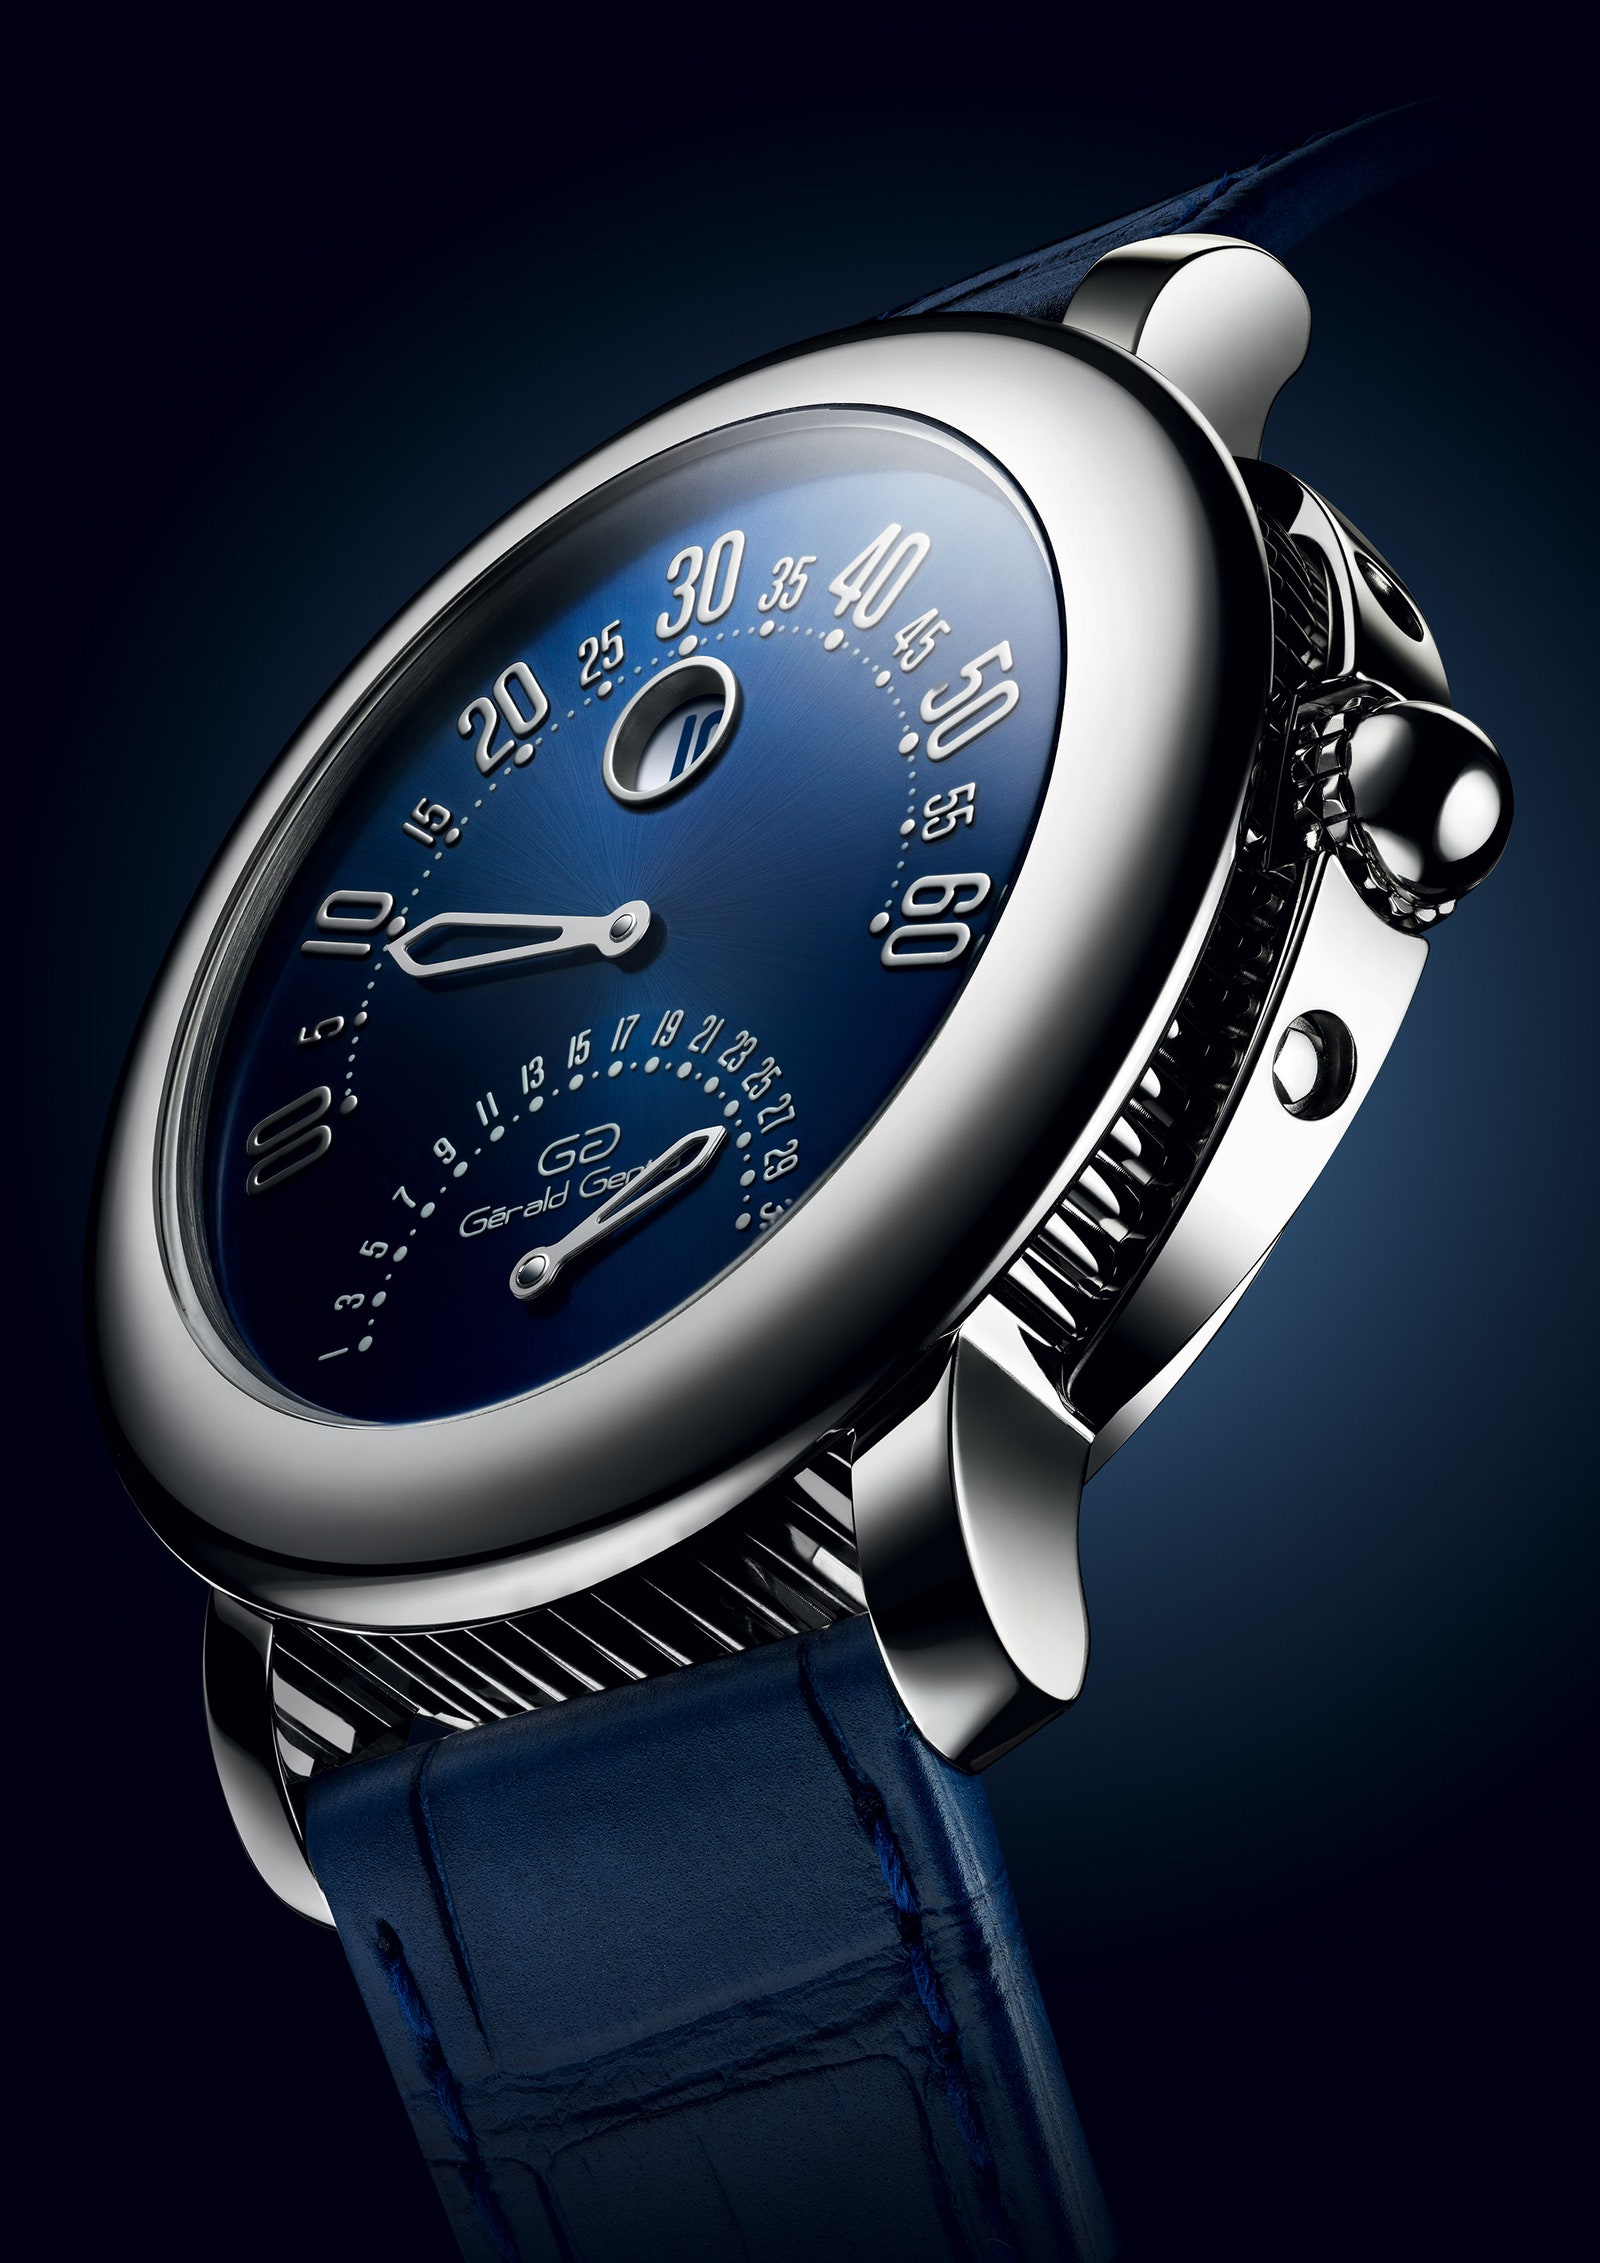 Часы Grald Genta 50th Anniversary выпущенные Bvlgari к юбилею часовой мануфактуры Grald Genta.